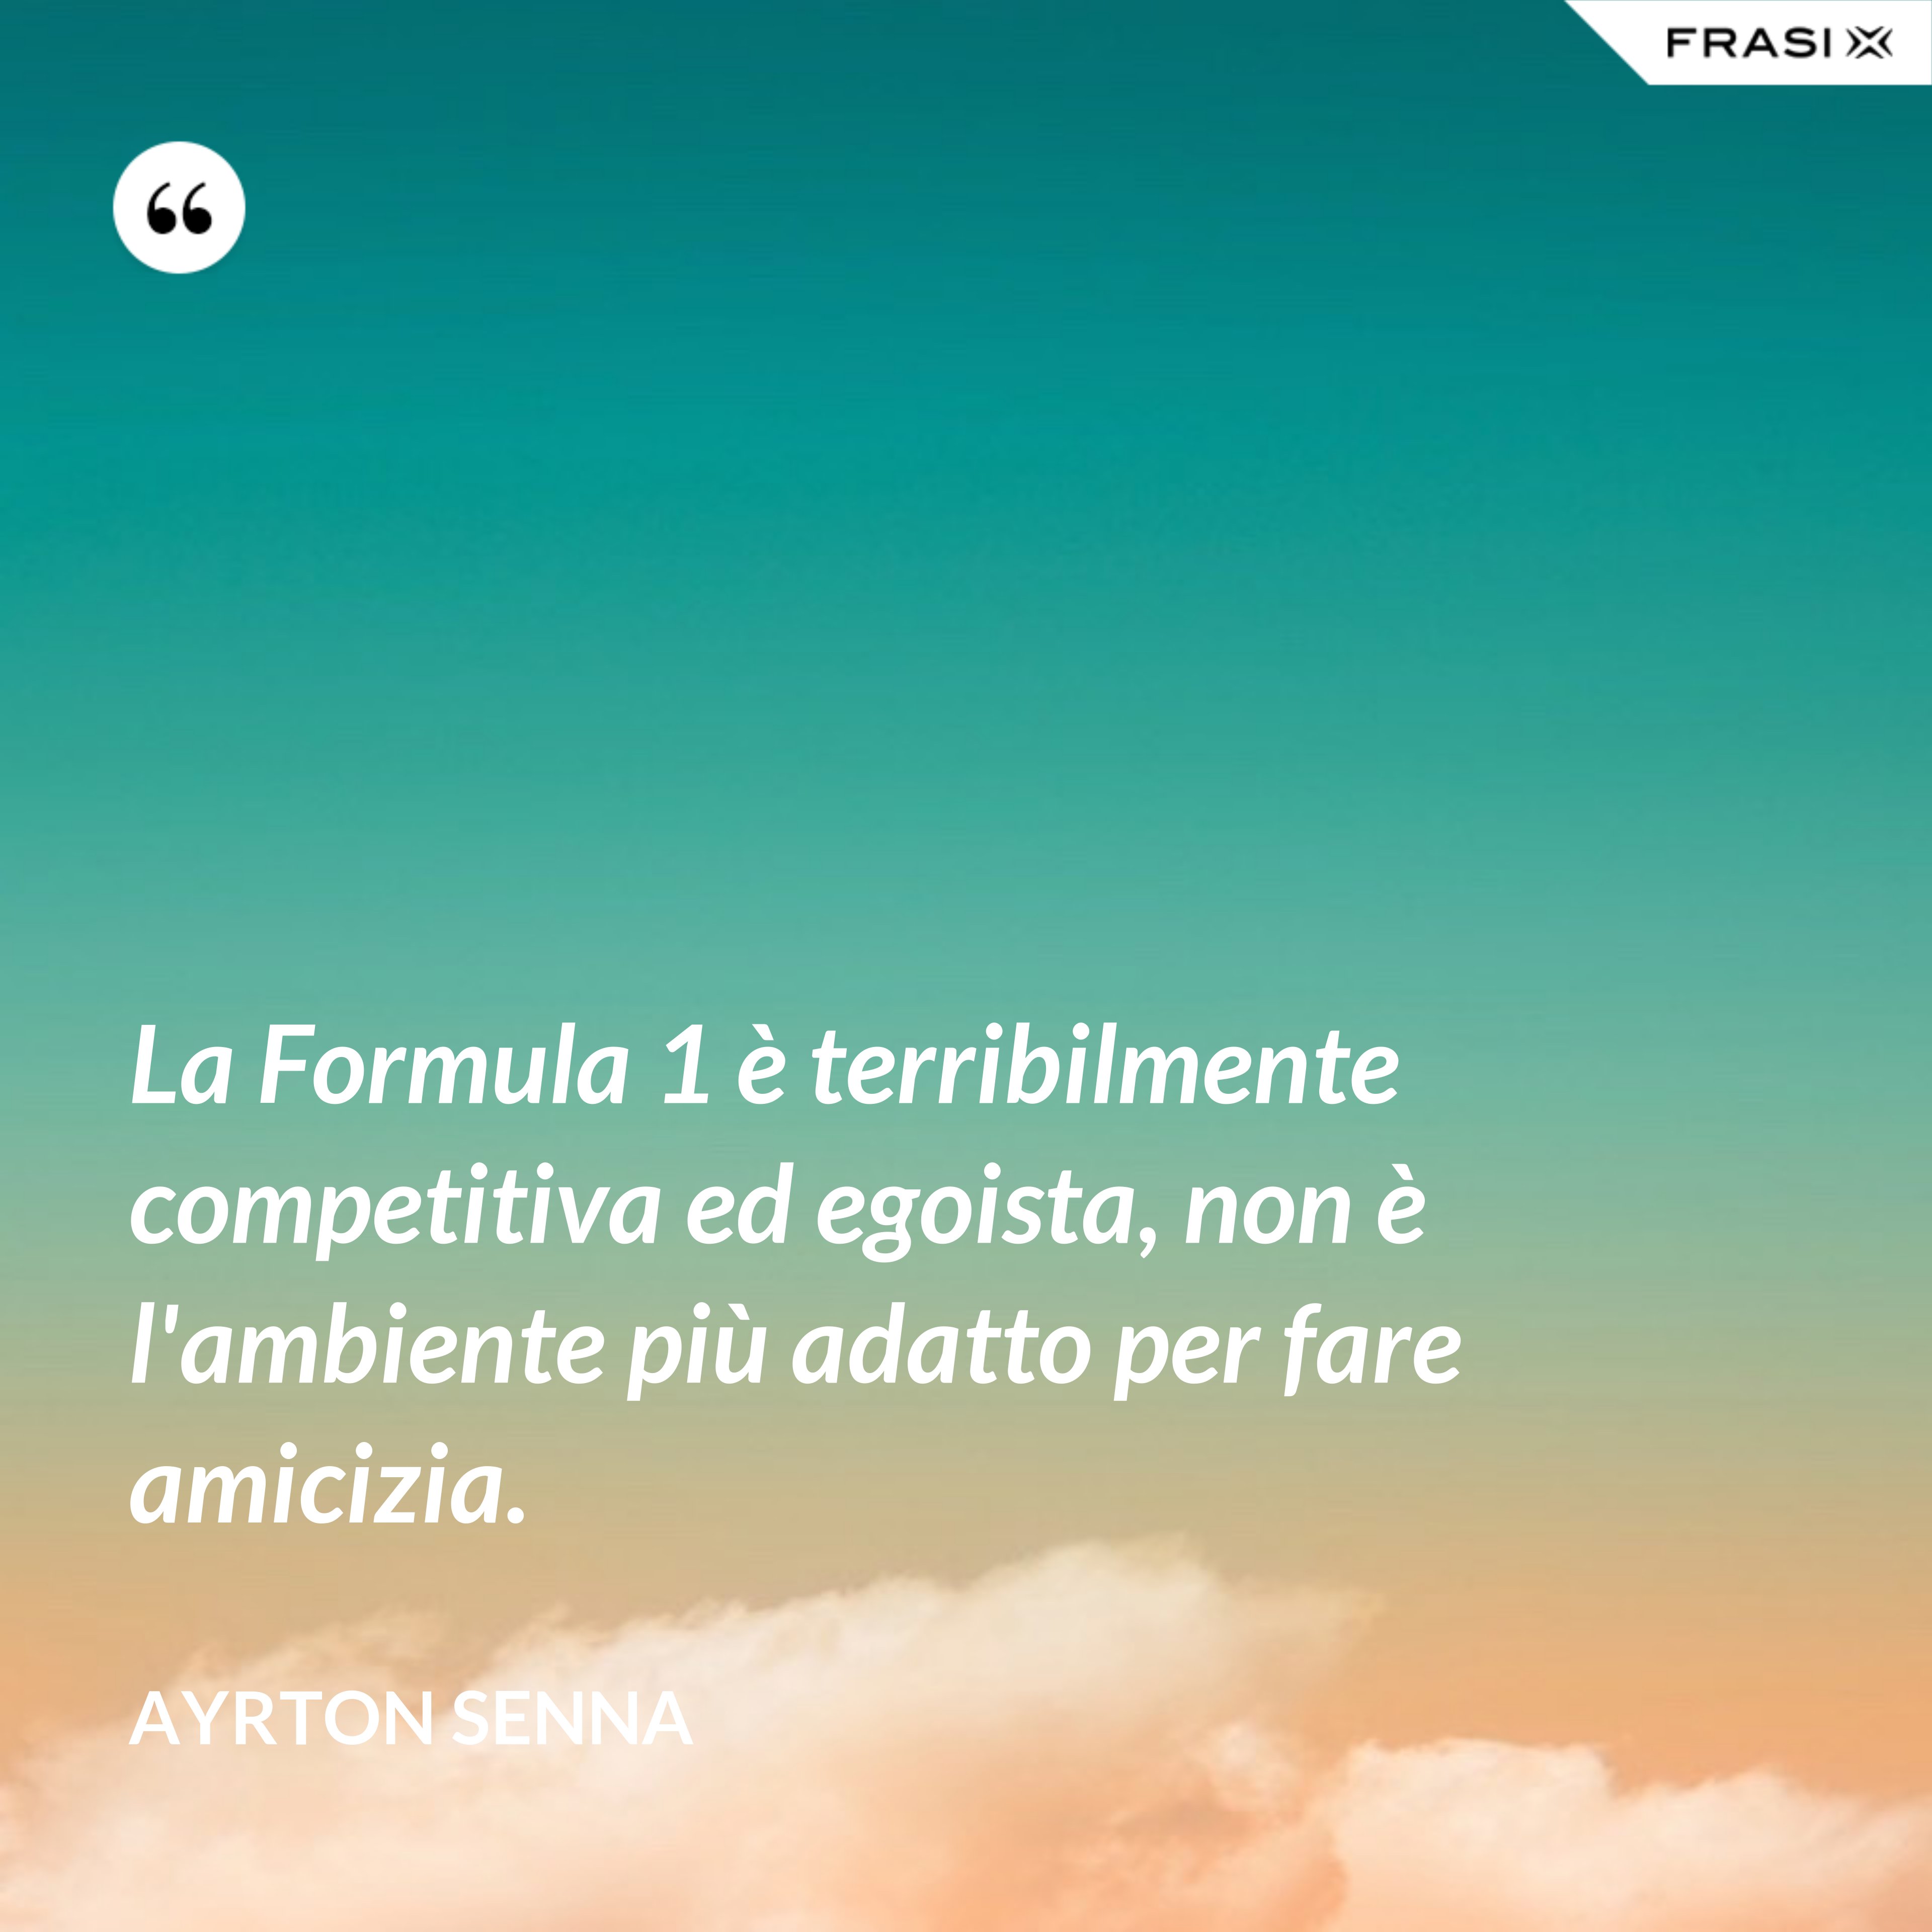 La Formula 1 è terribilmente competitiva ed egoista, non è l'ambiente più adatto per fare amicizia. - Ayrton Senna